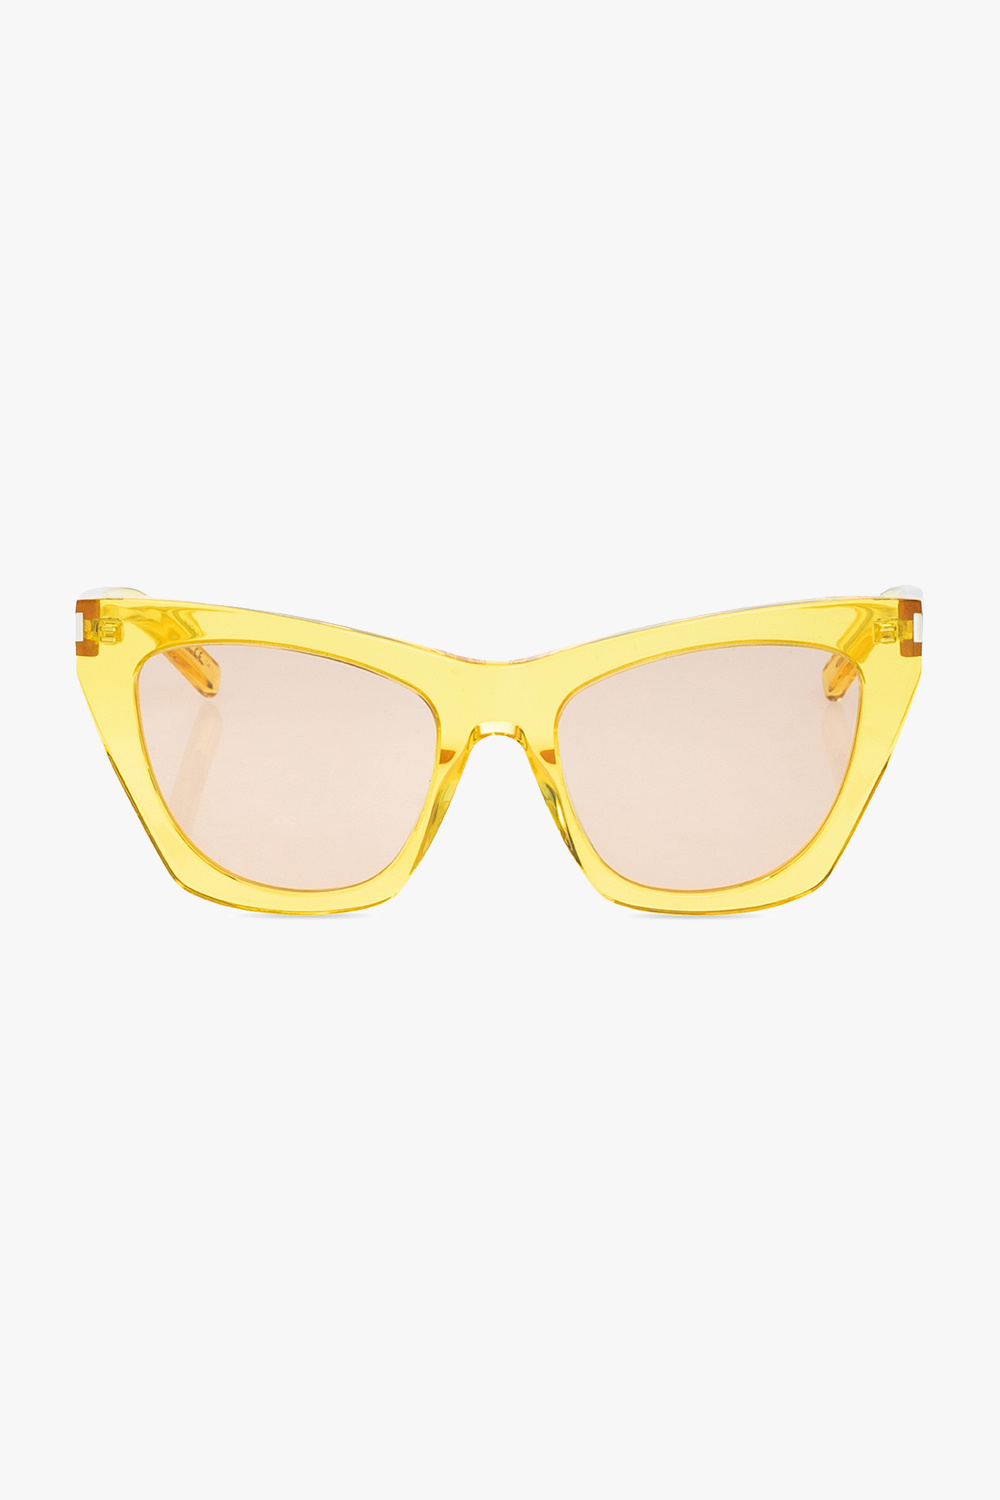 ‘SL 214 Kate’ sunglasses Saint Laurent - Vitkac GB